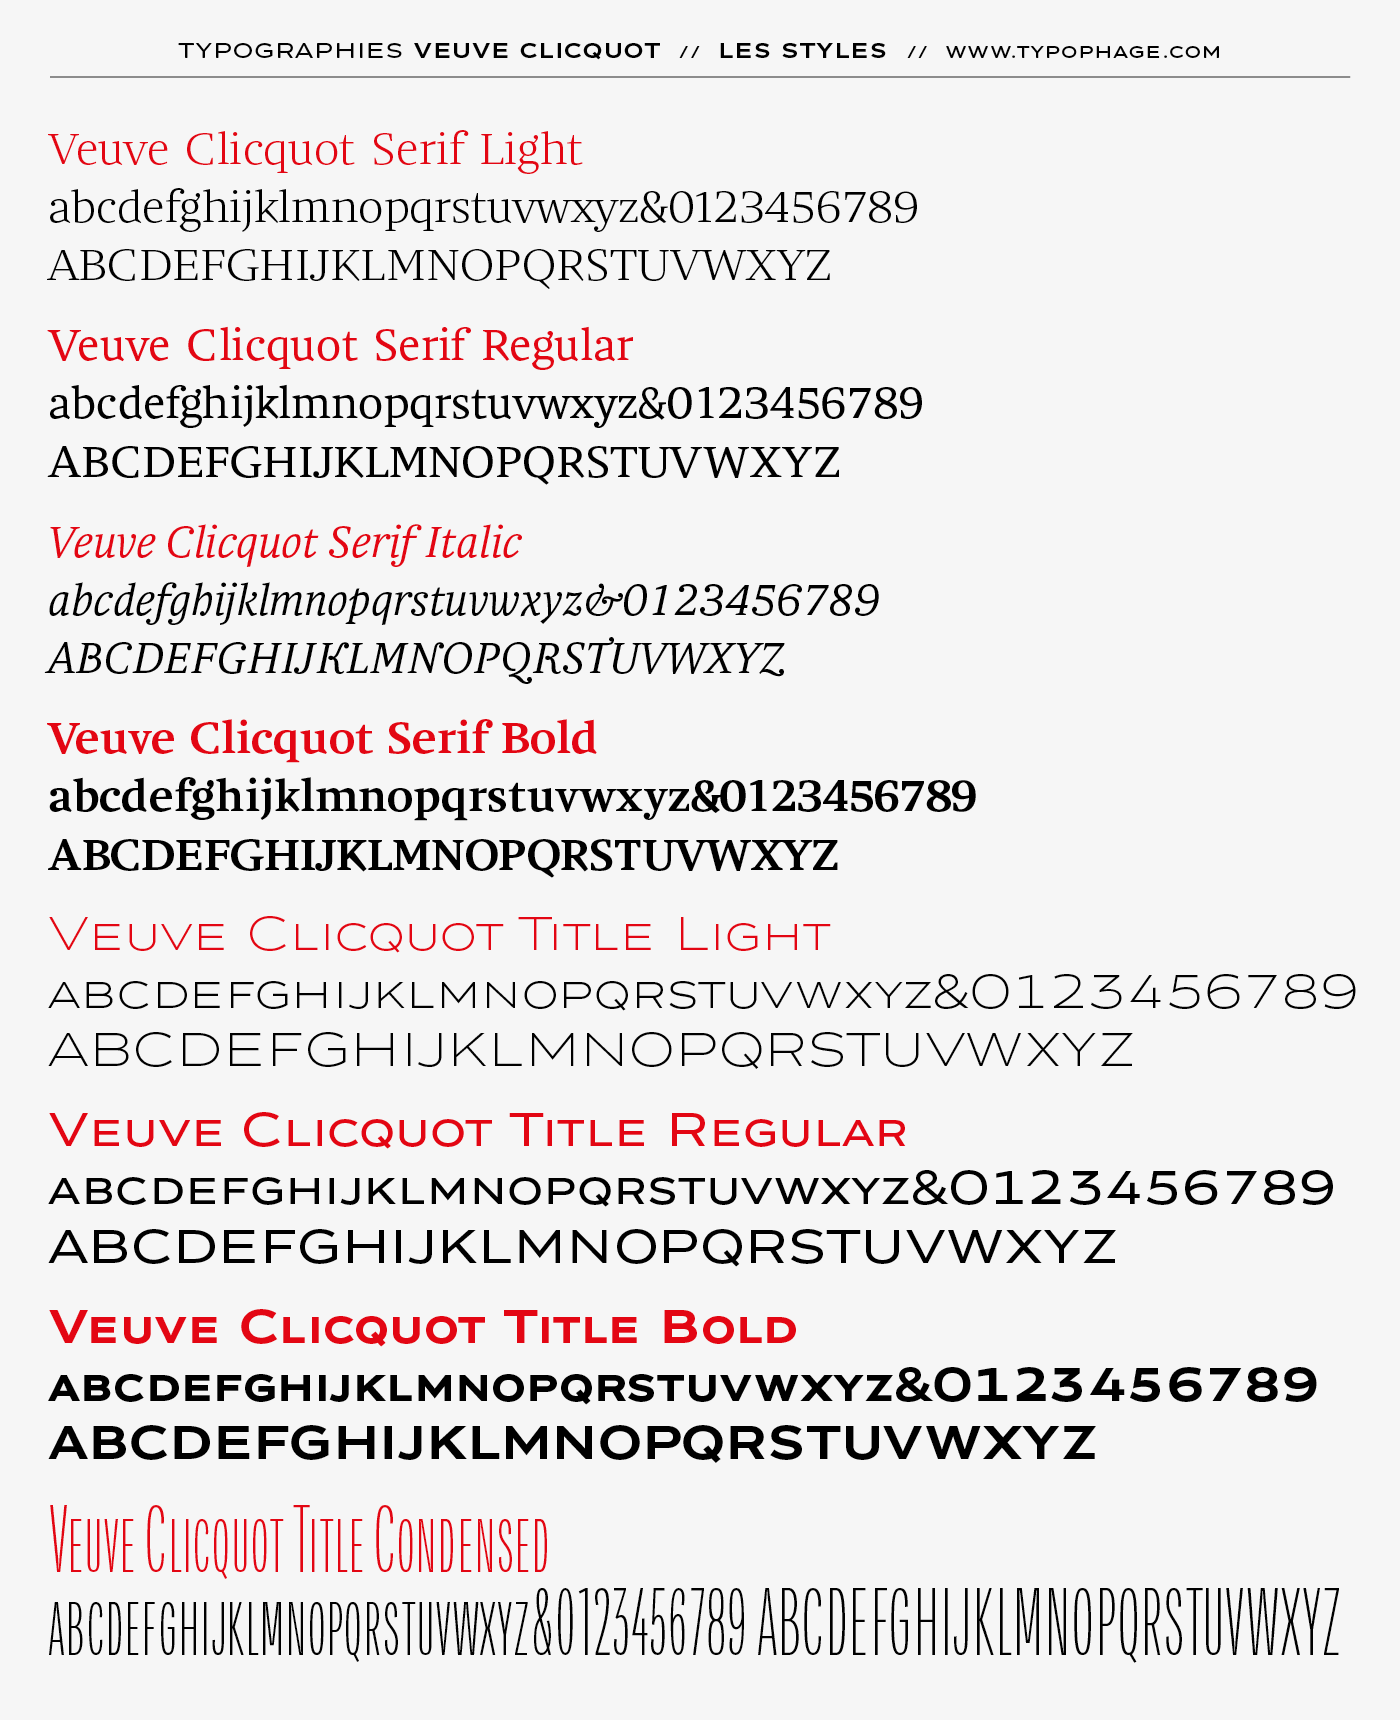 Typographie exclusive Veuve Clicquot Ponsardin. Alphabet sur mesure, typographie d'identité.